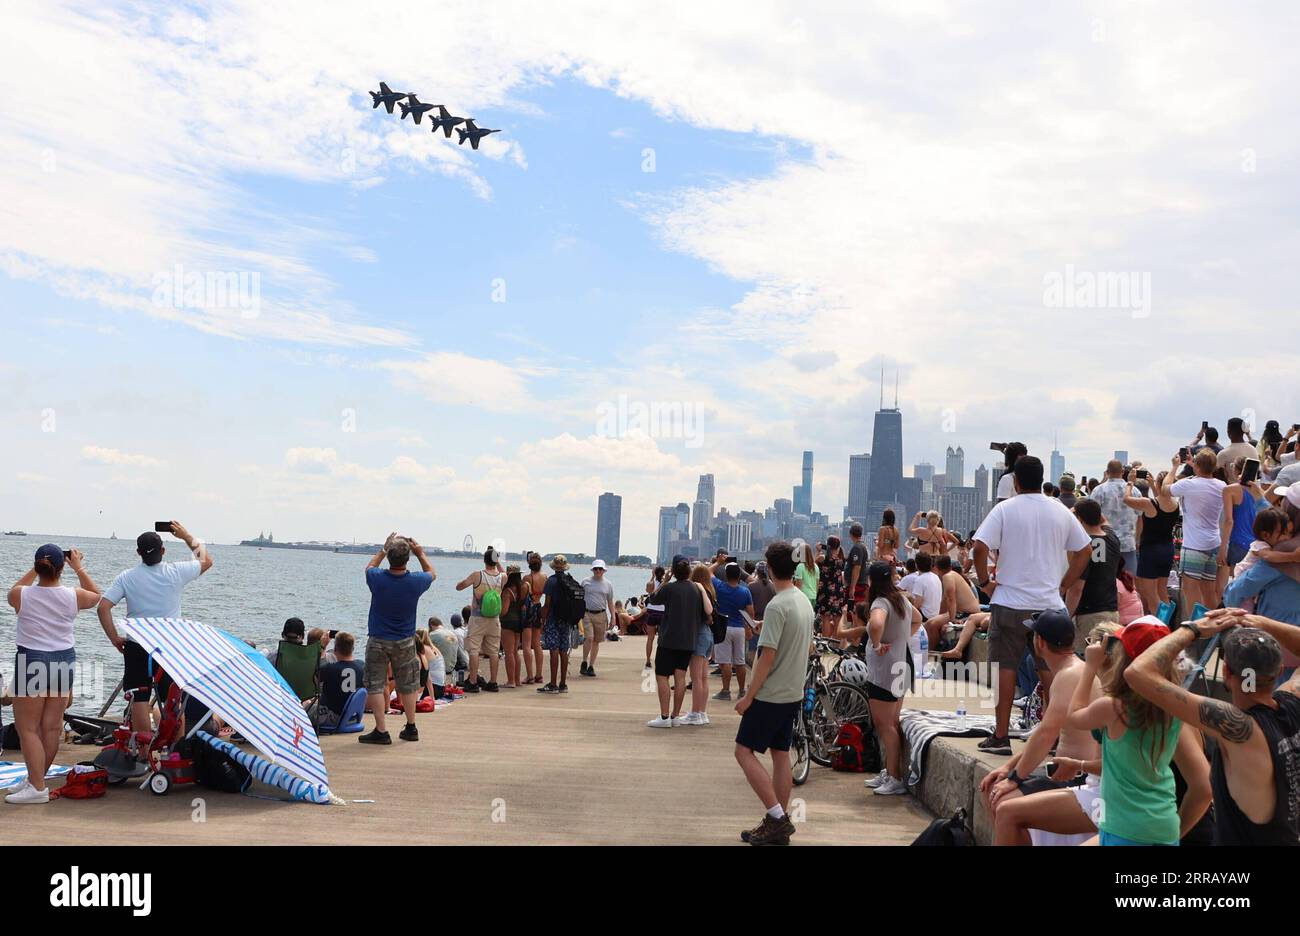 210821 -- CHICAGO, le 21 août 2021 -- les gens regardent les performances des avions lors du Chicago Air and Water Show 2021 à Chicago, aux États-Unis, le 21 août 2021. Chicagoans samedi a levé les yeux vers le ciel alors que le Chicago Air and Water Show 2021 est revenu dans une version réinventée. Les spectacles aériens gratuits et réinventés font partie de l'initiative Open Chicago du maire de Chicago pour rouvrir en toute sécurité la troisième plus grande ville des États-Unis. Photo de /Xinhua U.S.-CHICAGO-AIR ET SPECTACLE AQUATIQUE 2021 JoelxLerner PUBLICATIONxNOTxINxCHN Banque D'Images